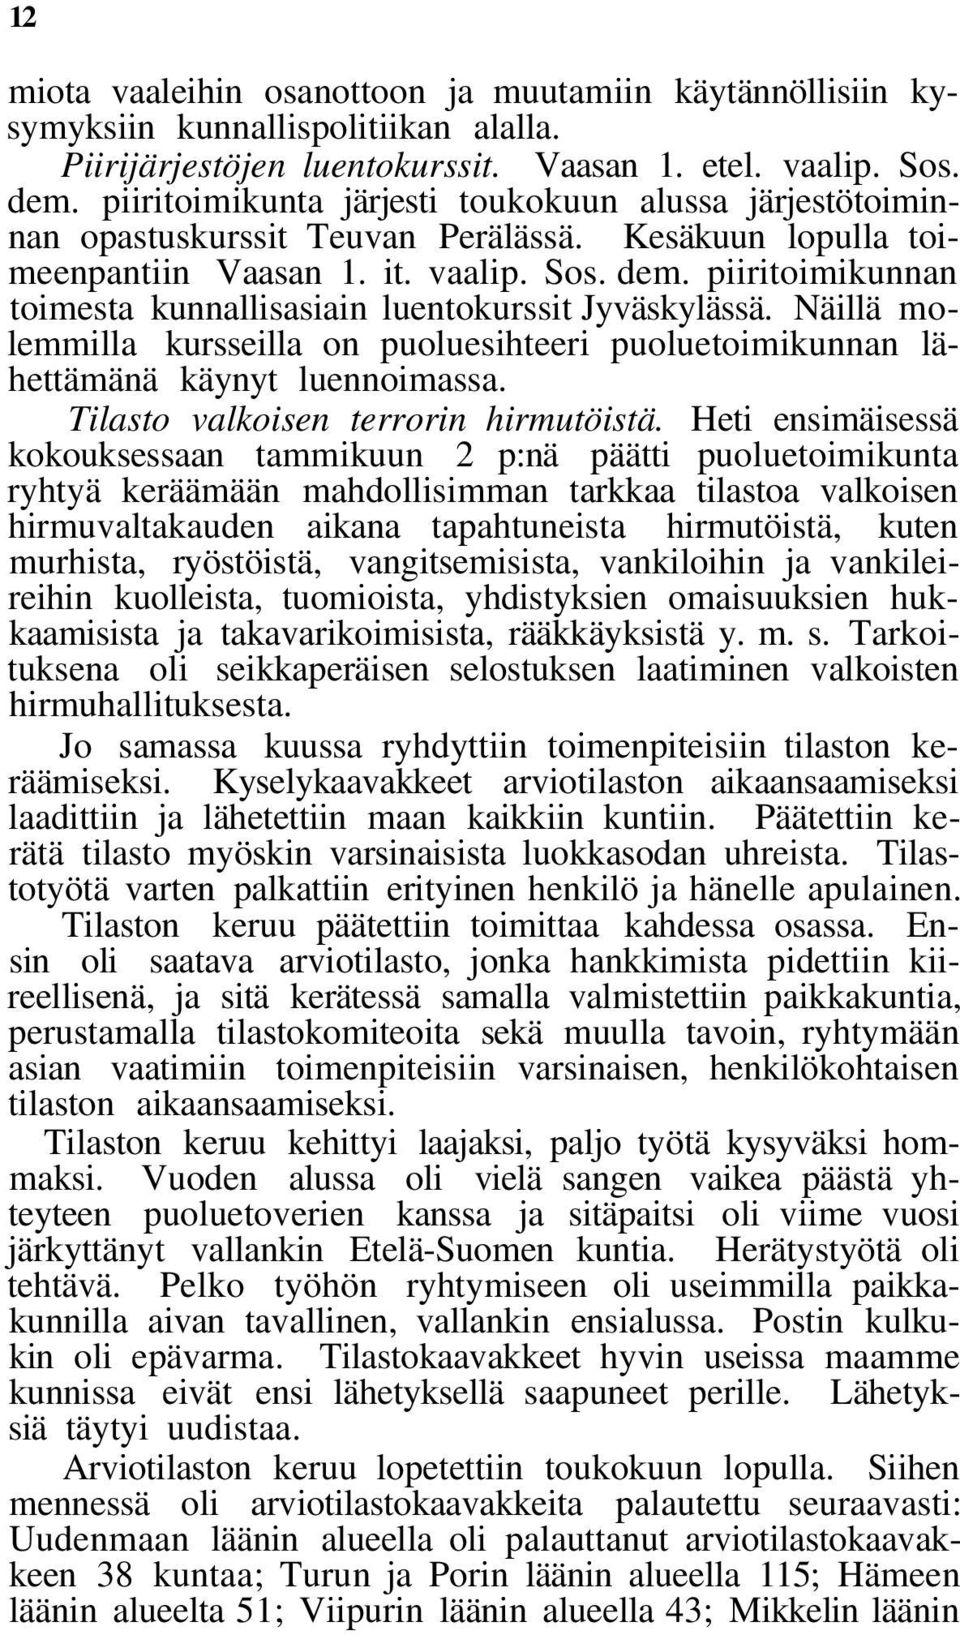 piiritoimikunnan toimesta kunnallisasiain luentokurssit Jyväskylässä. Näillä molemmilla kursseilla on puoluesihteeri puoluetoimikunnan lähettämänä käynyt luennoimassa.